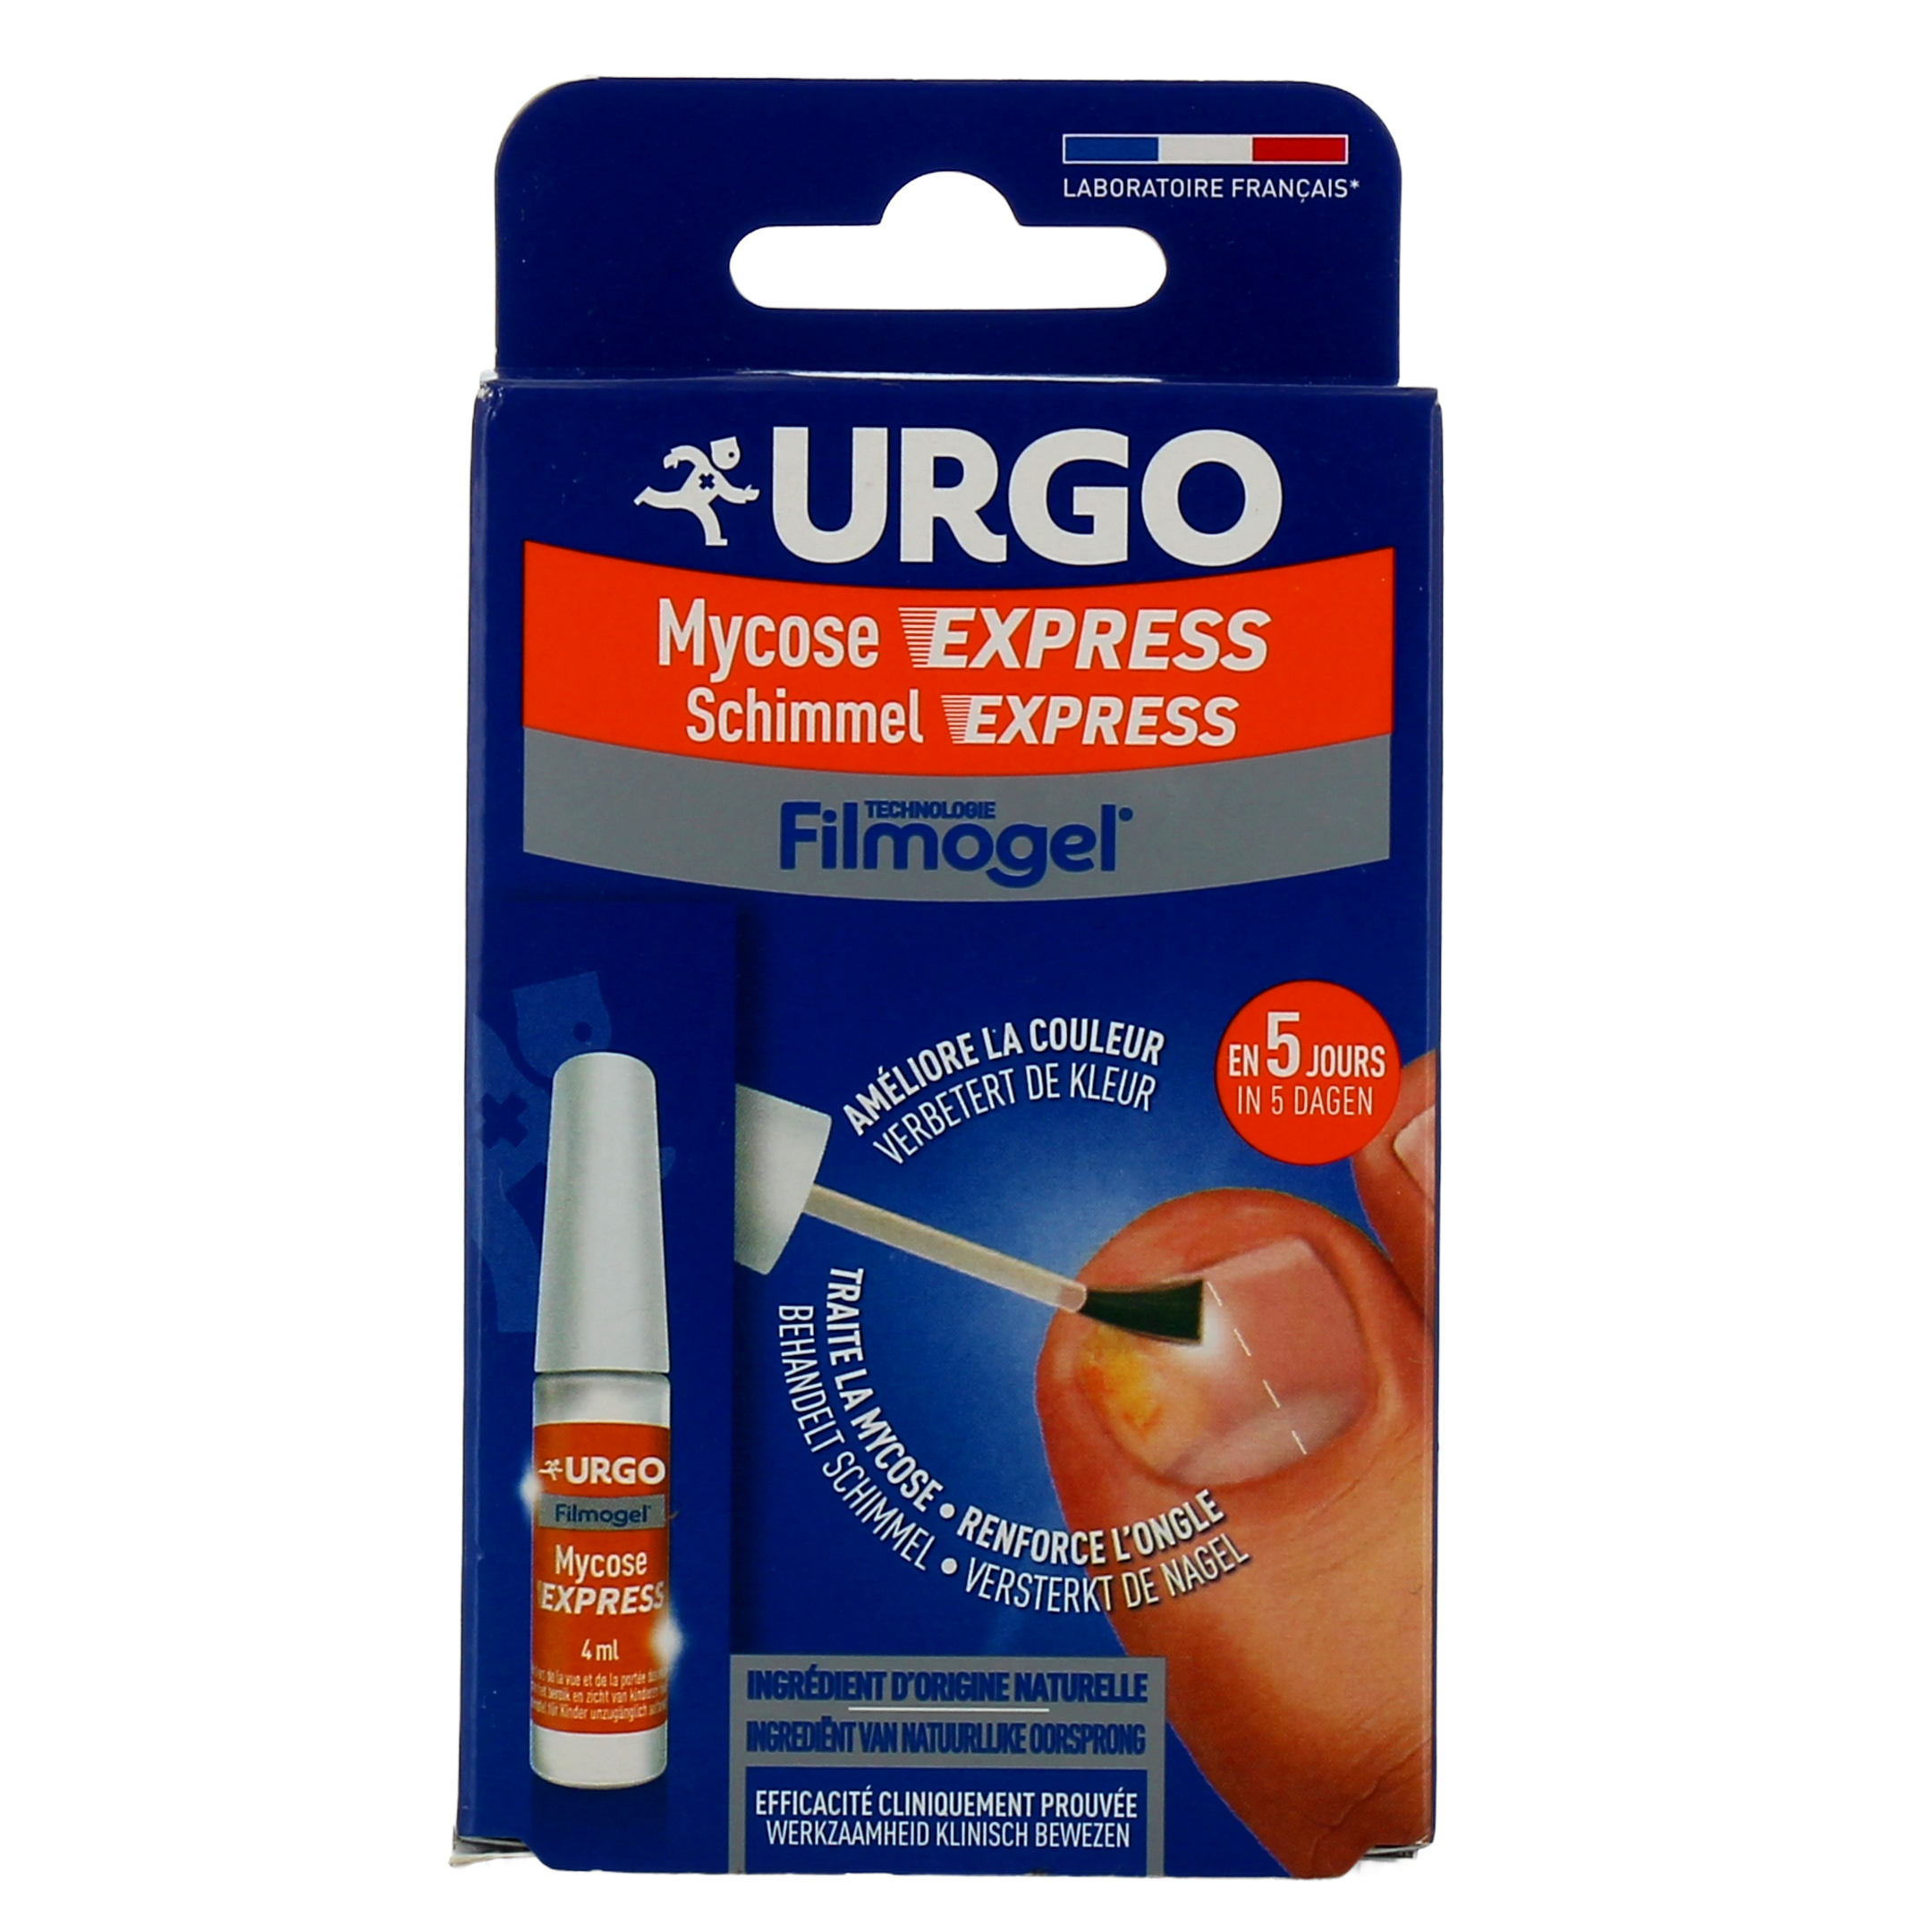 Urgo filmogel mycose express 4ml